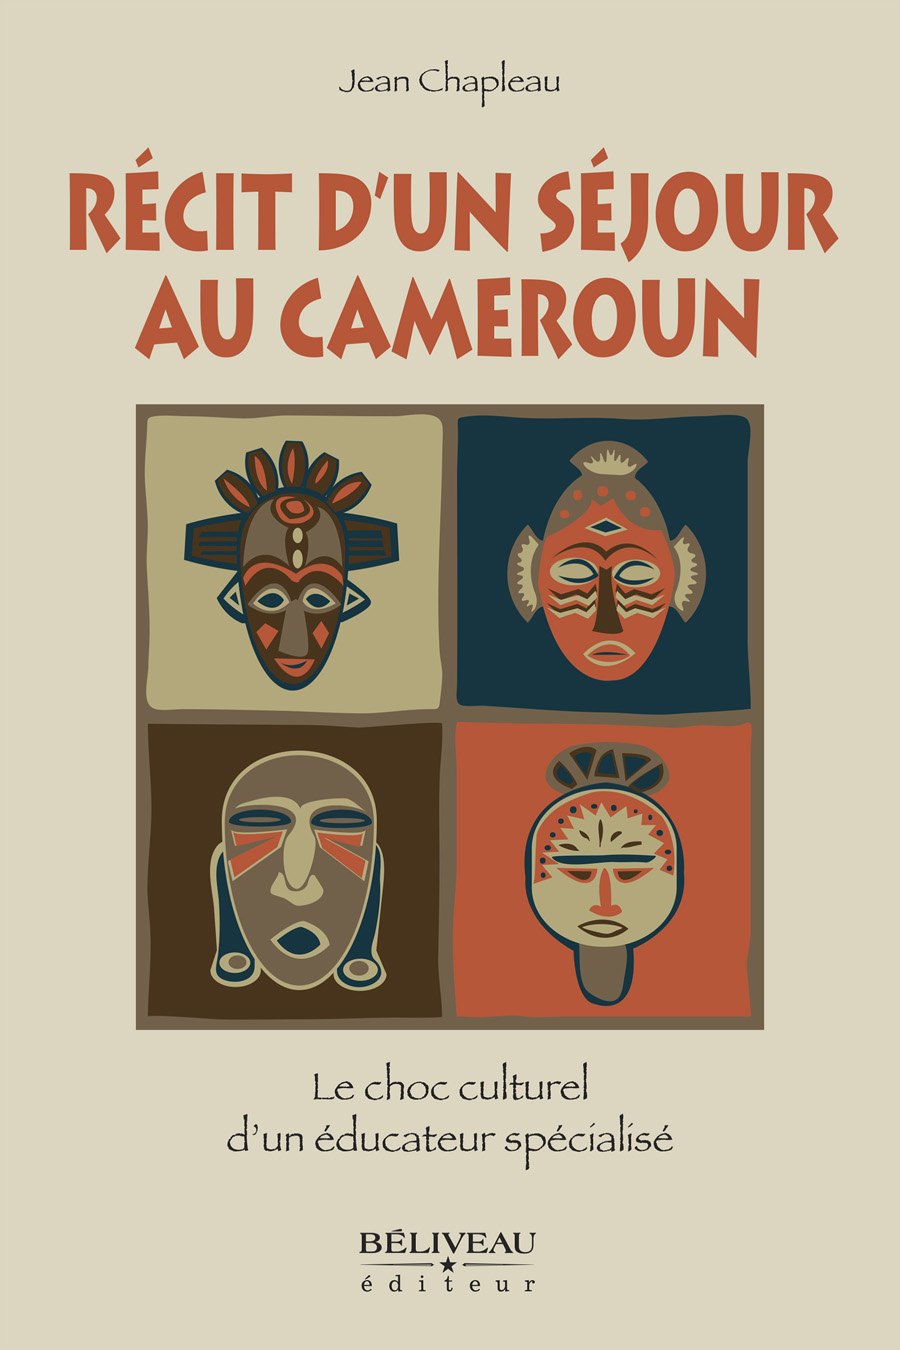 Jean Chapleau - Récit d'un séjour au Cameroun (2014) - Béliveau éditeur